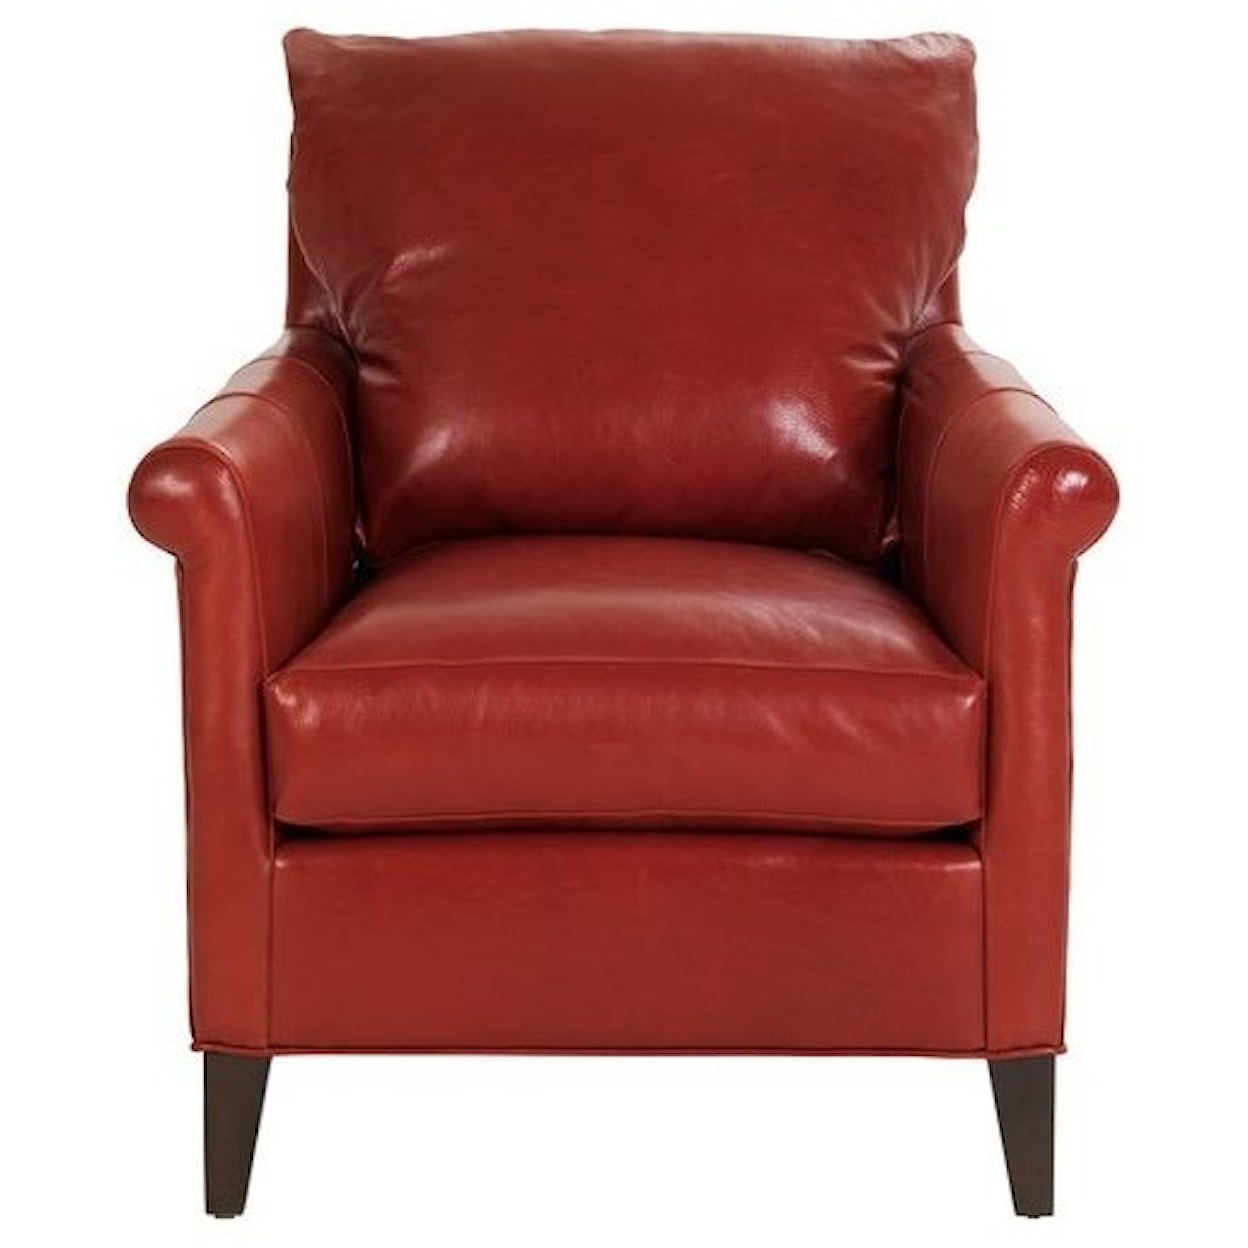 Vanguard Furniture Accent Chairs Gwynn Chair